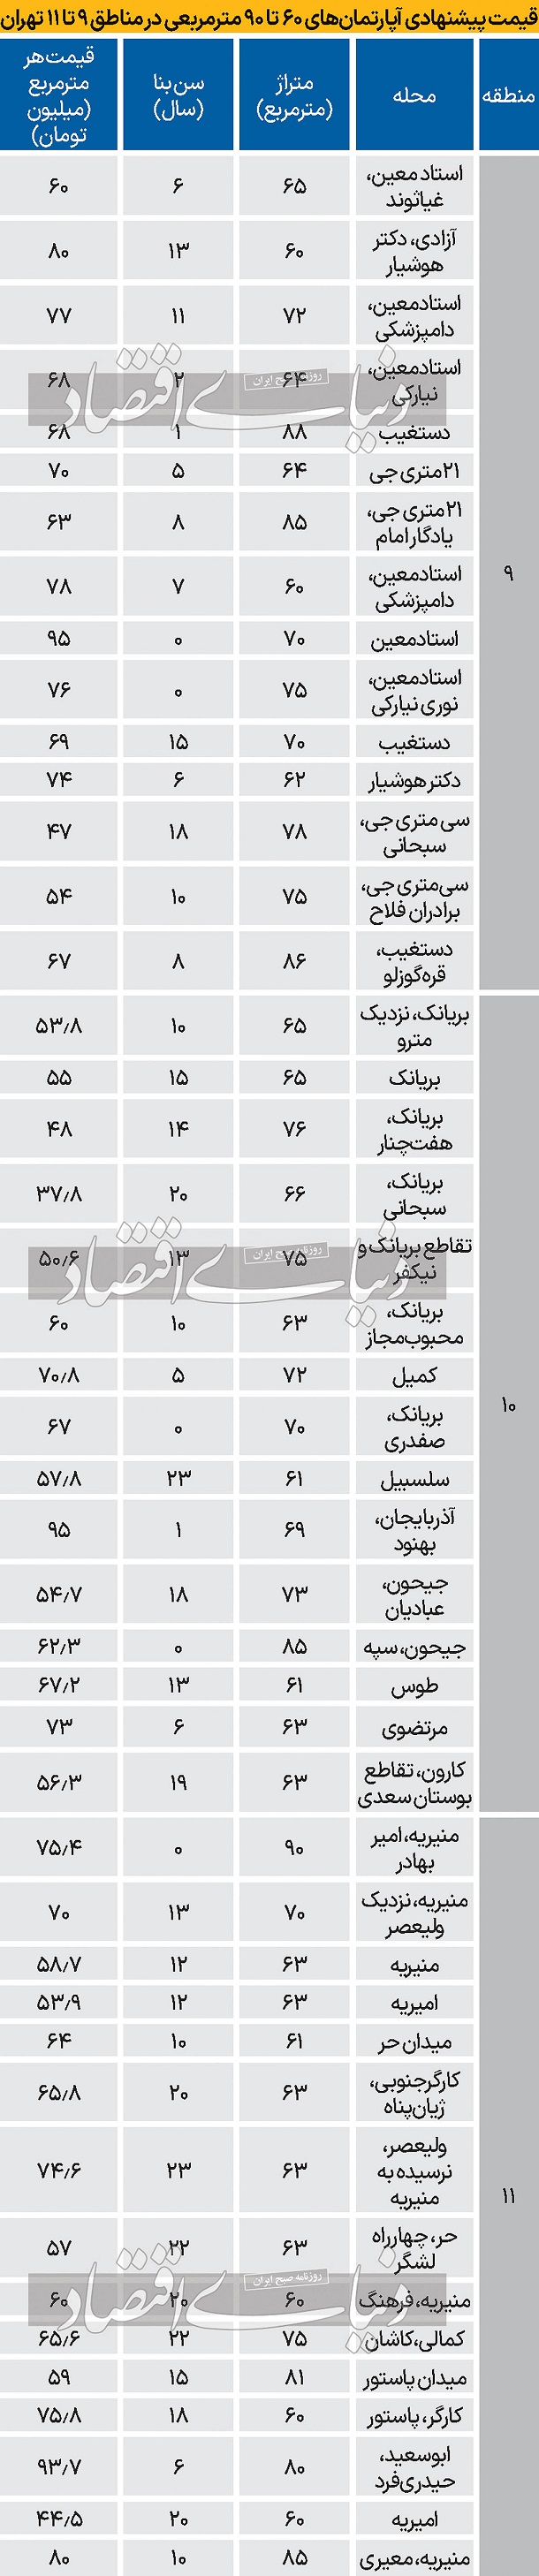 قیمت جدید آپارتمان در مناطق 9 تا 11 تهران